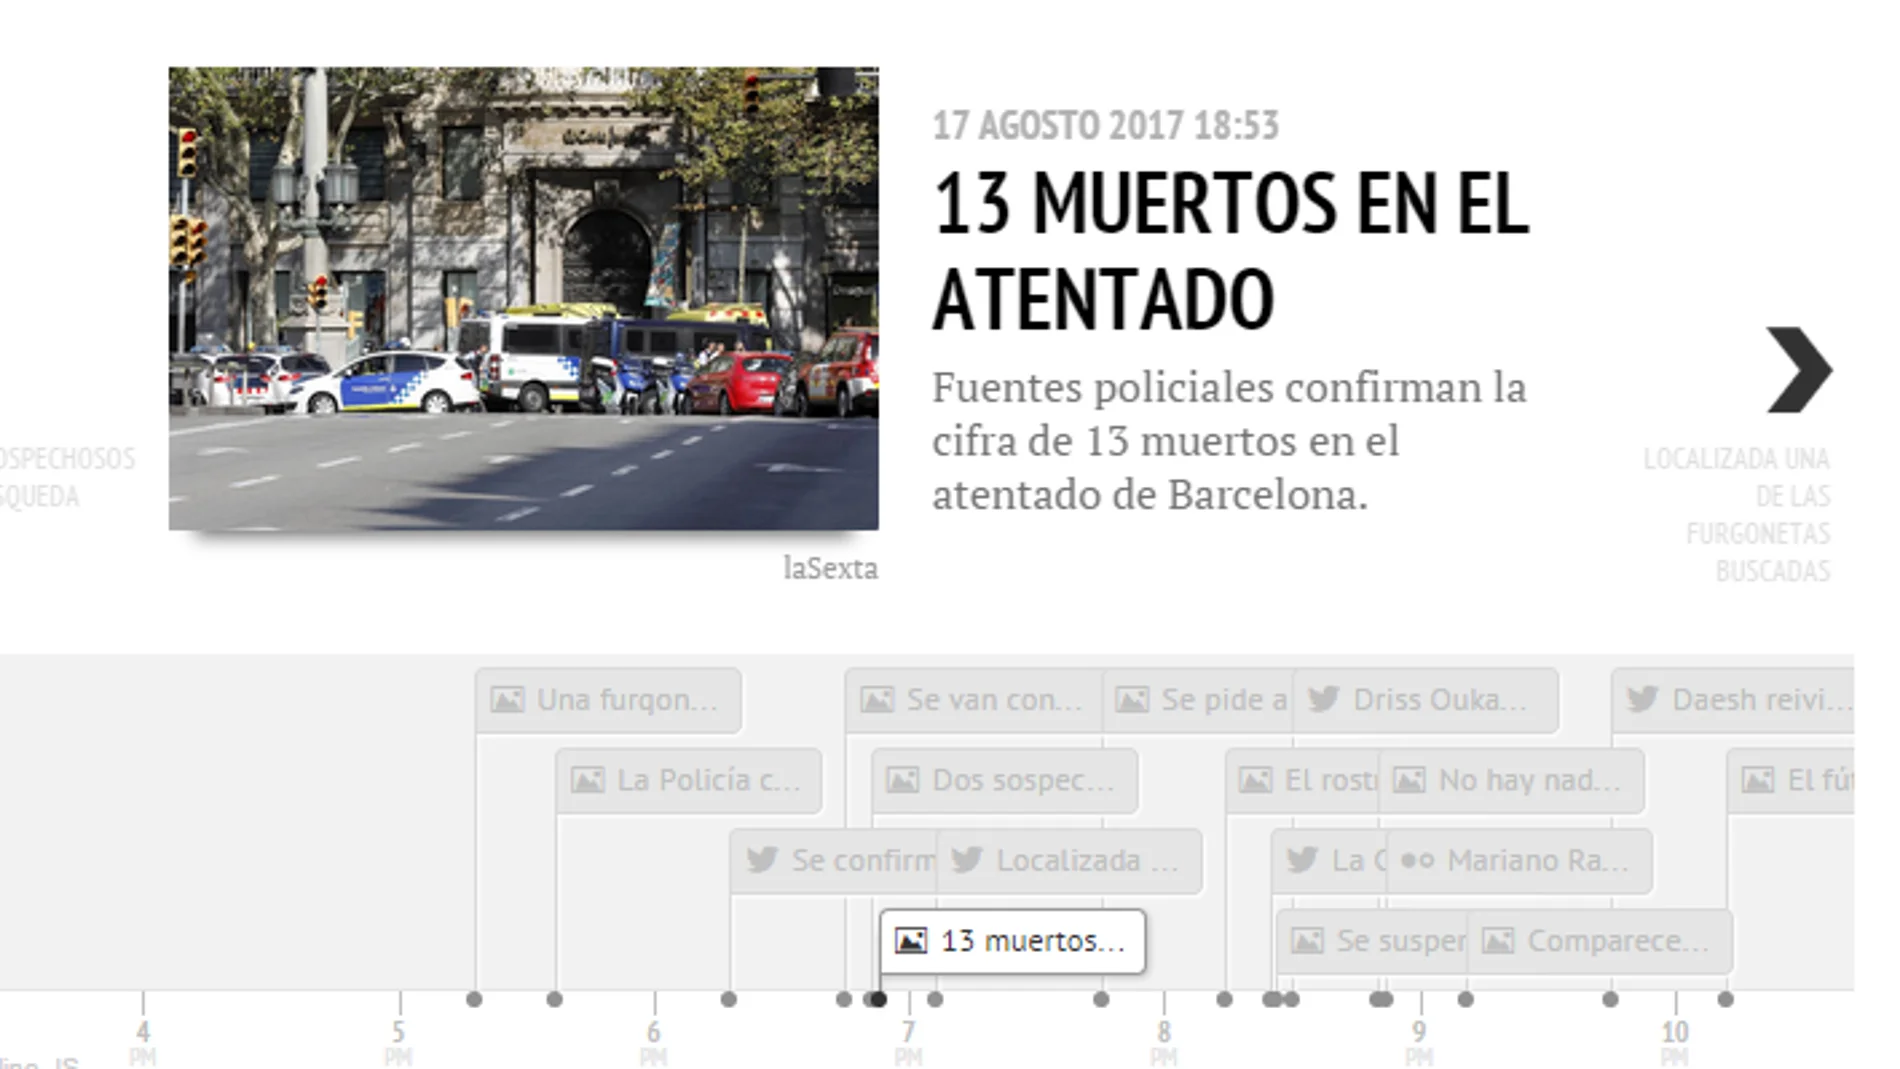 La cronología de los atentados de Barcelona y Cambrils